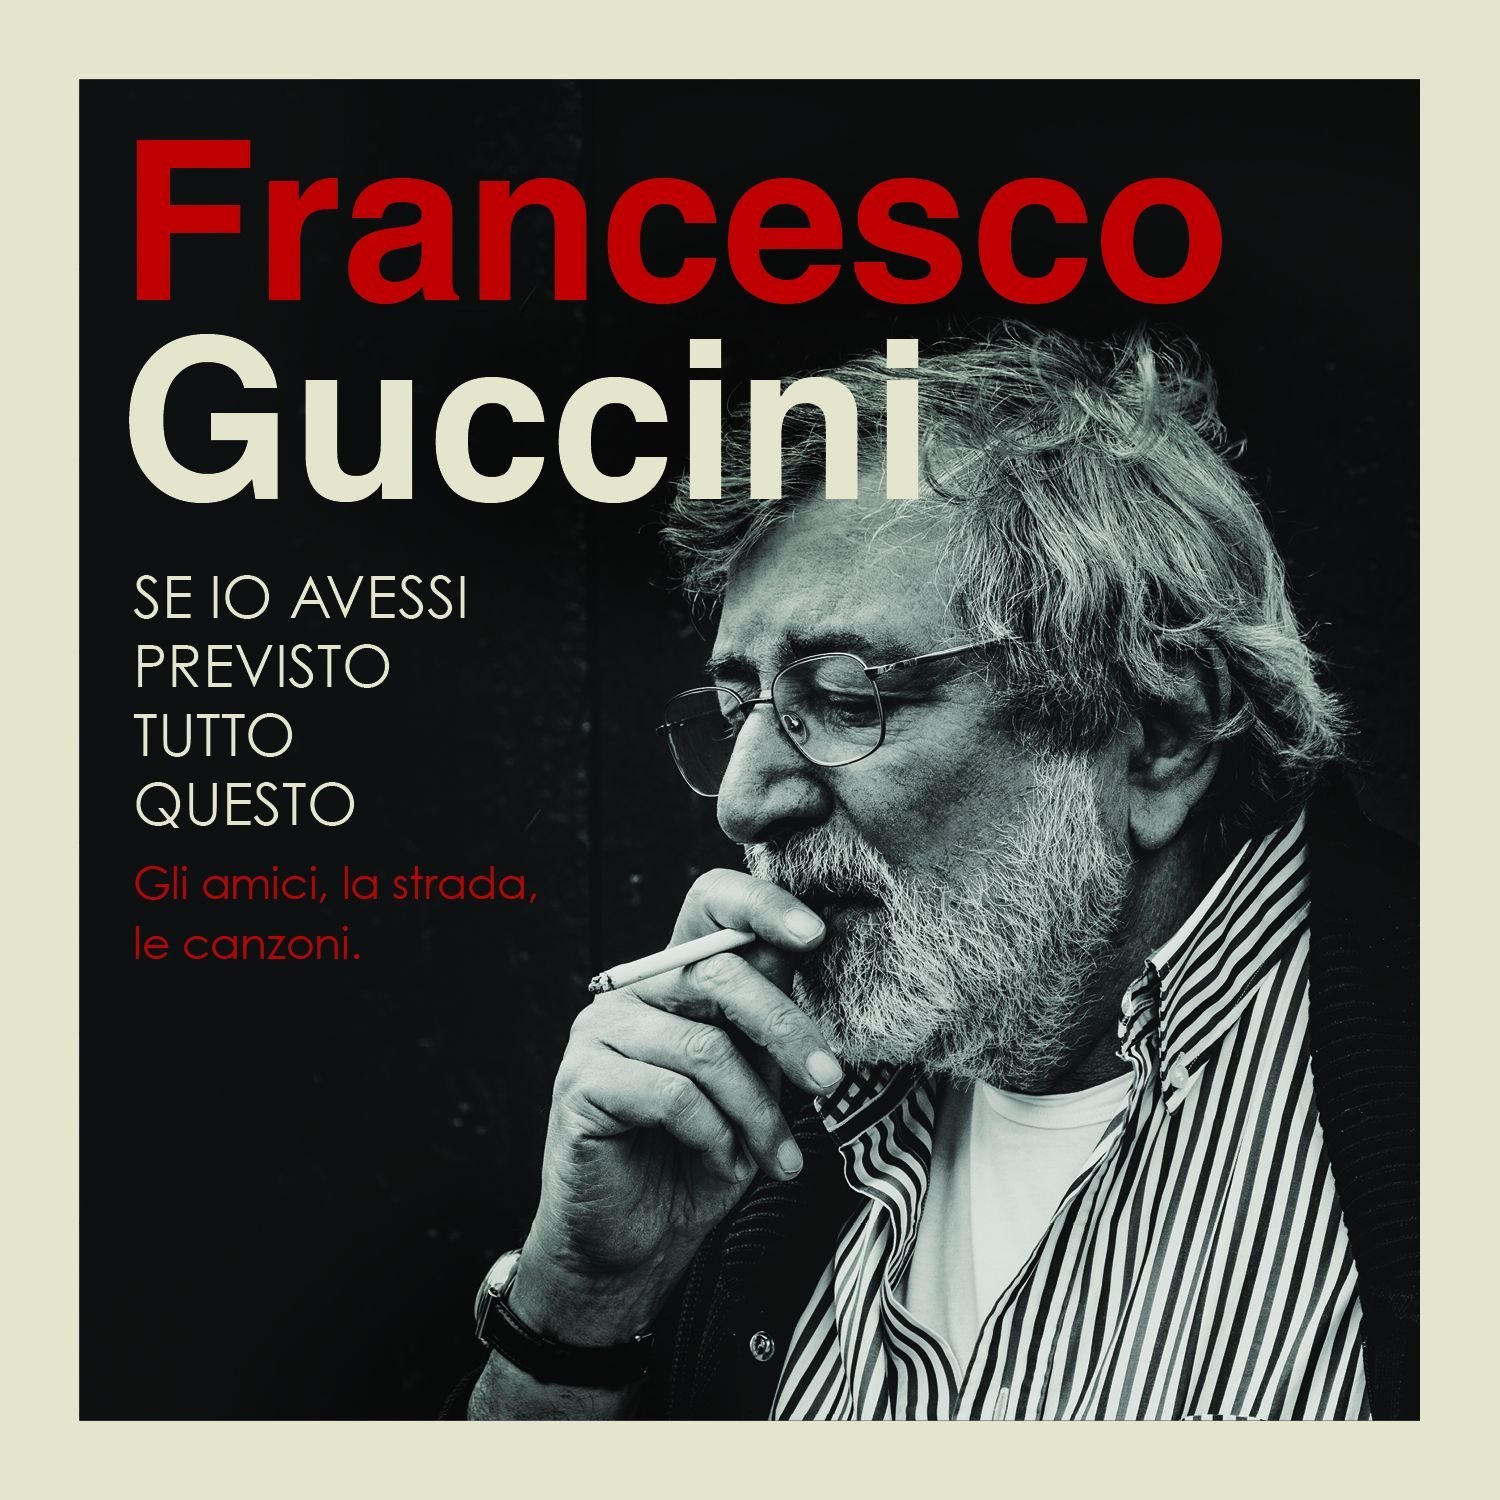 Audio Cd Francesco Guccini - Se Io Avessi Previsto Tutto Questo (4 Cd) NUOVO SIGILLATO, EDIZIONE DEL 27/11/2015 SUBITO DISPONIBILE